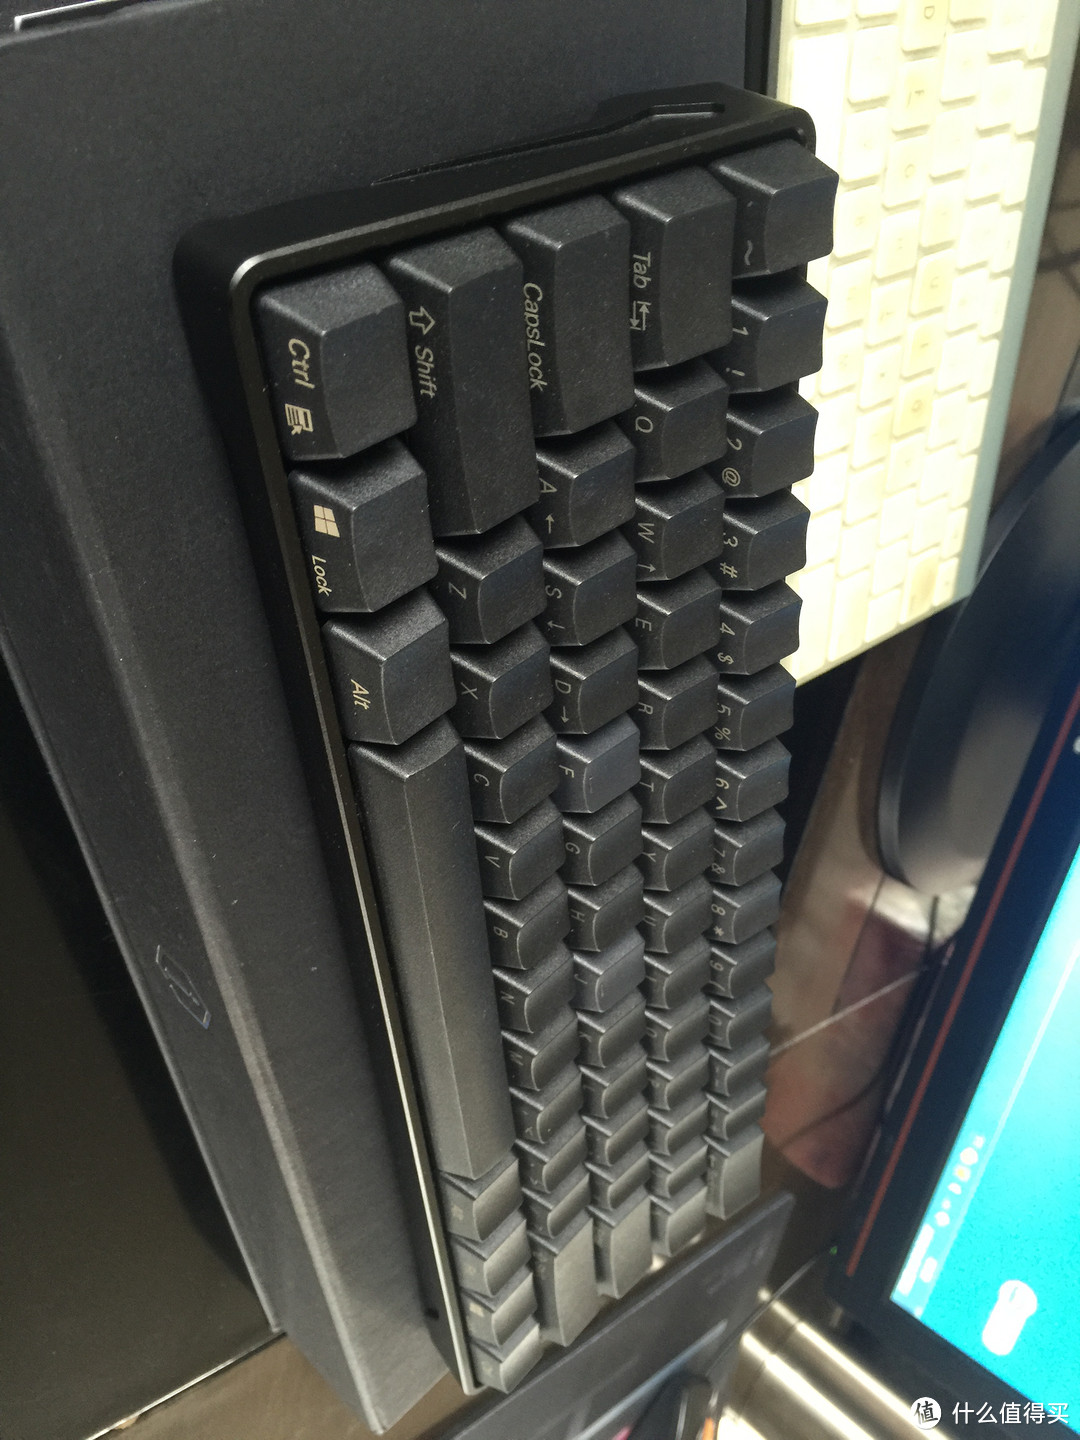 全黑青轴客制化 IQUNIX GH60 机械键盘